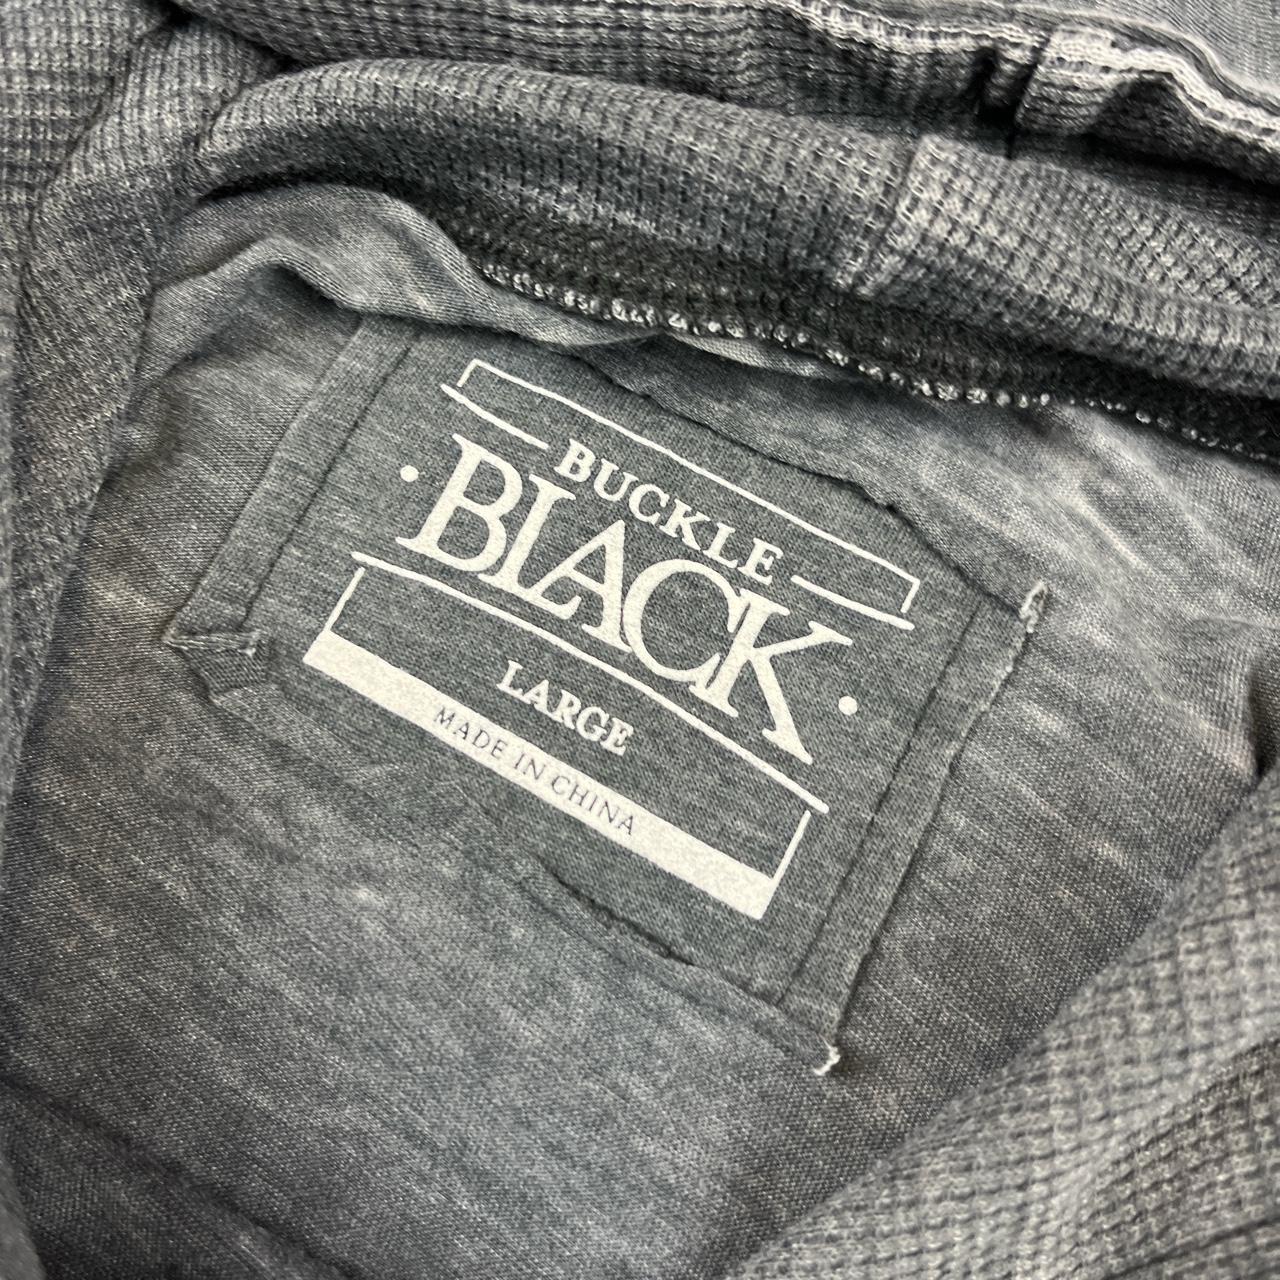 Buckle Black Men's Grey T-shirt (3)